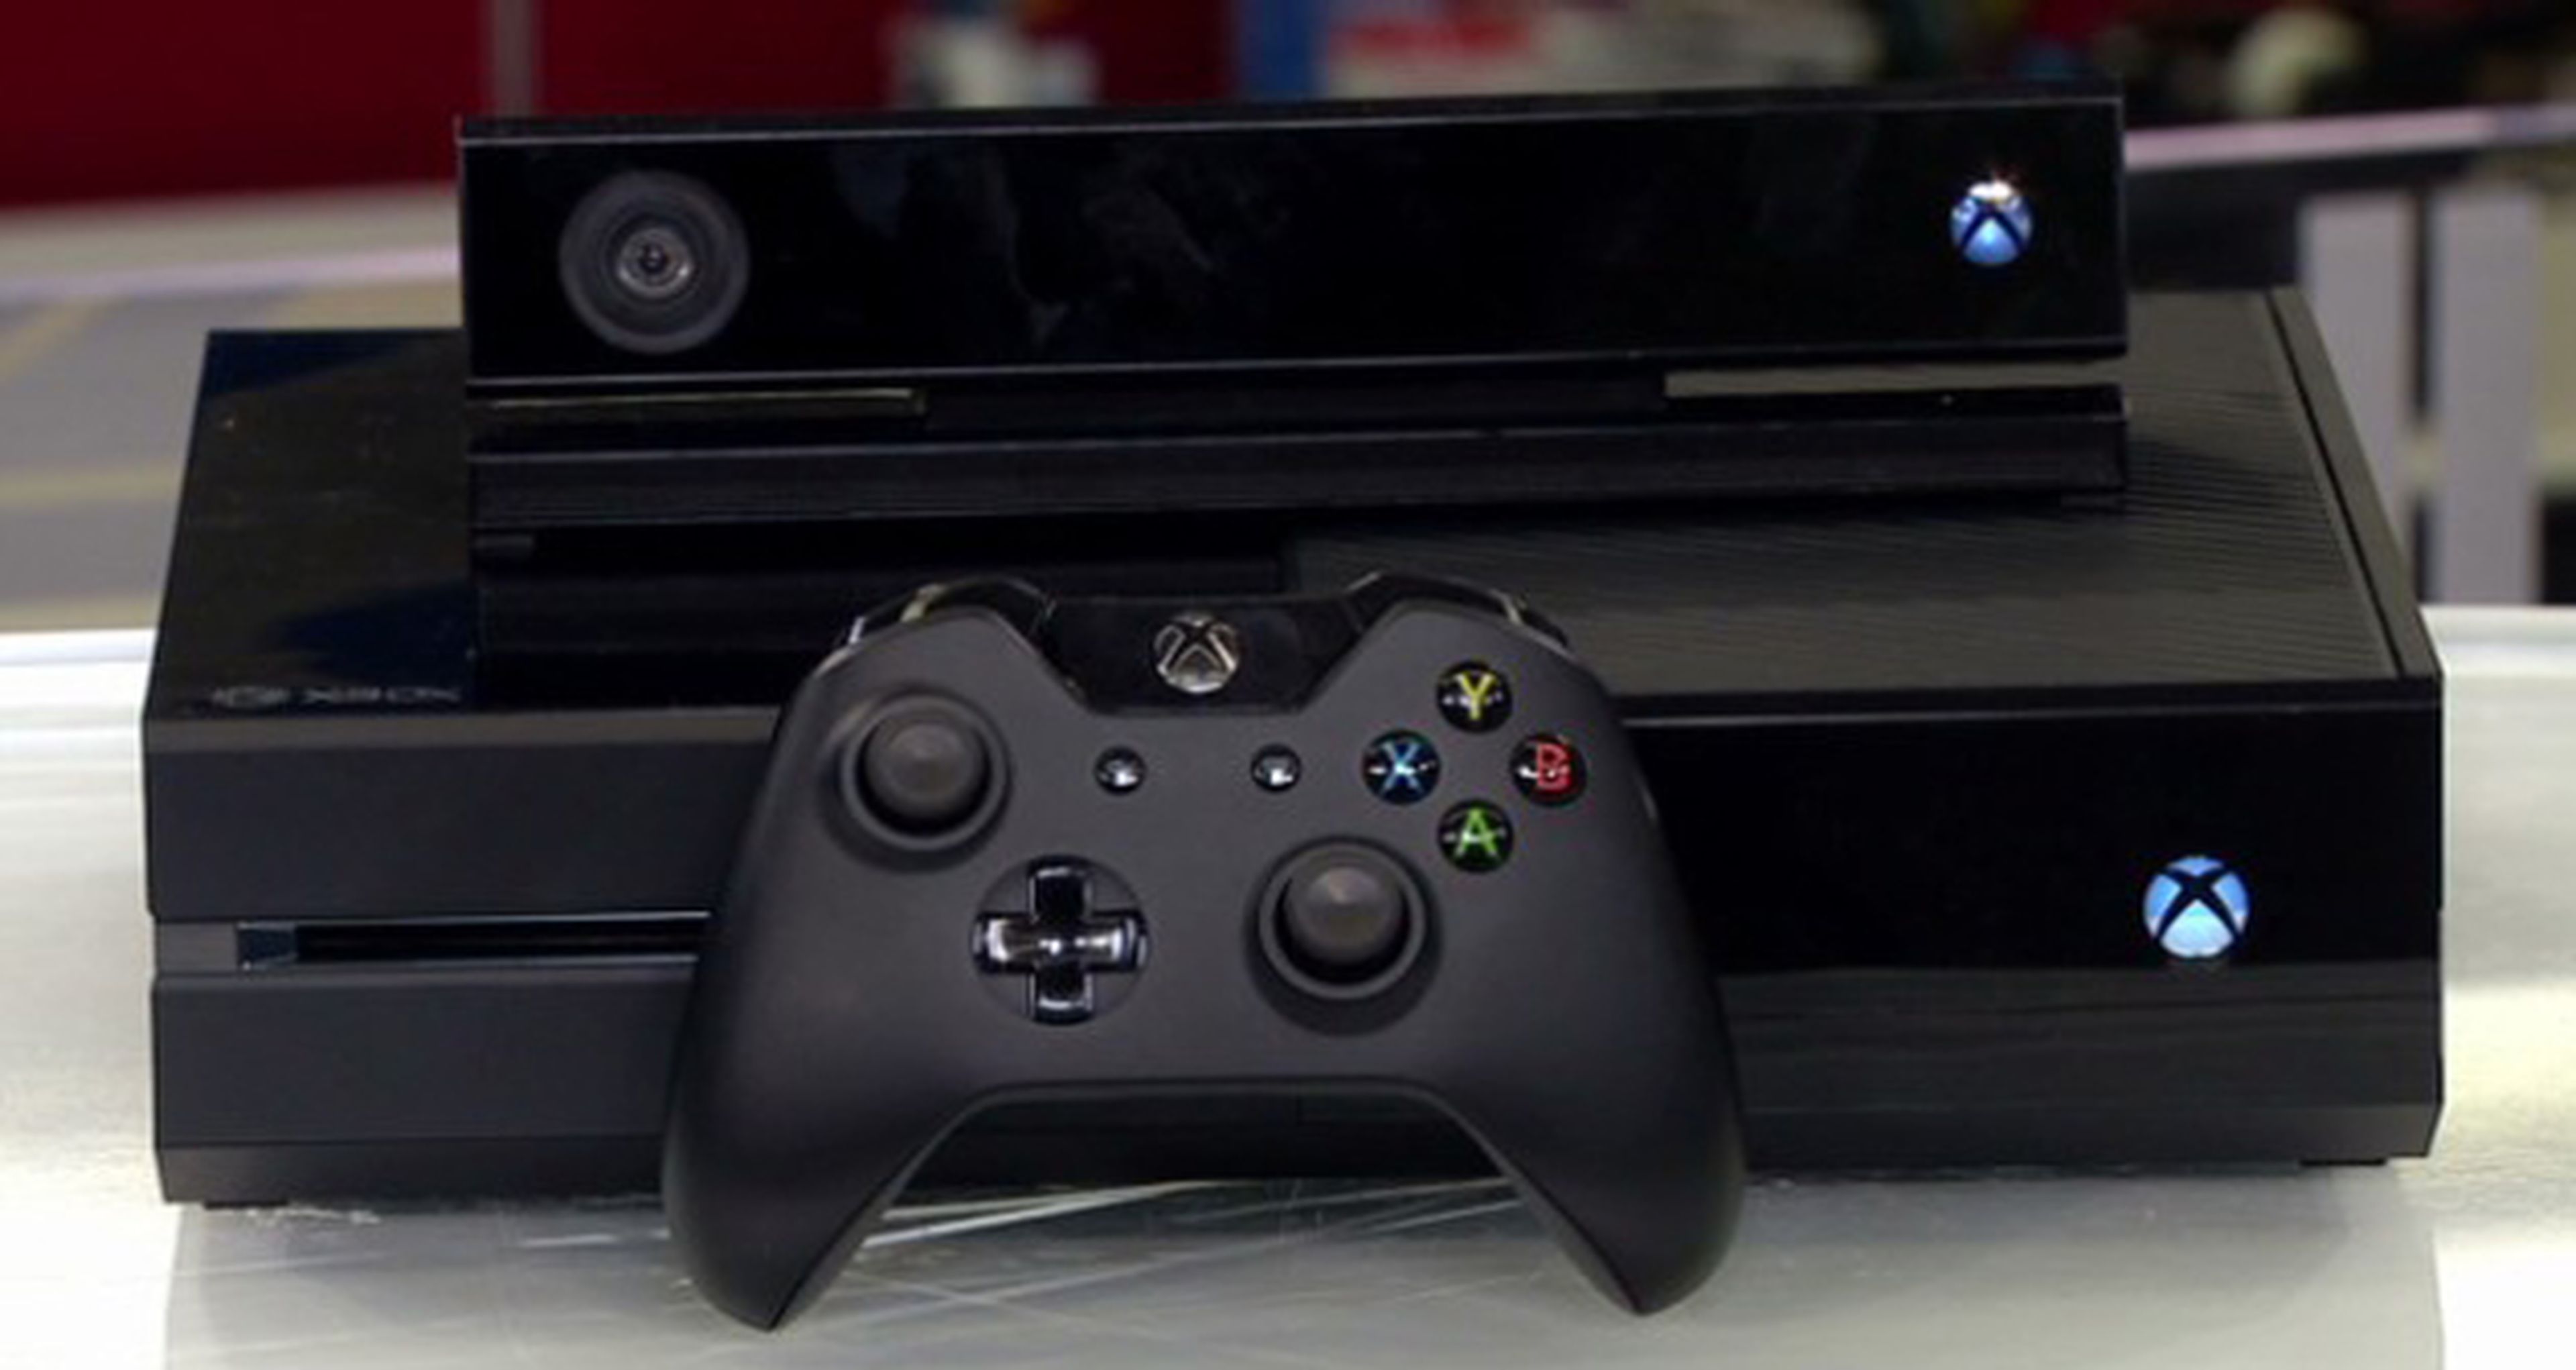 Encuesta: Pagaríais hasta 300 euros por una Xbox One